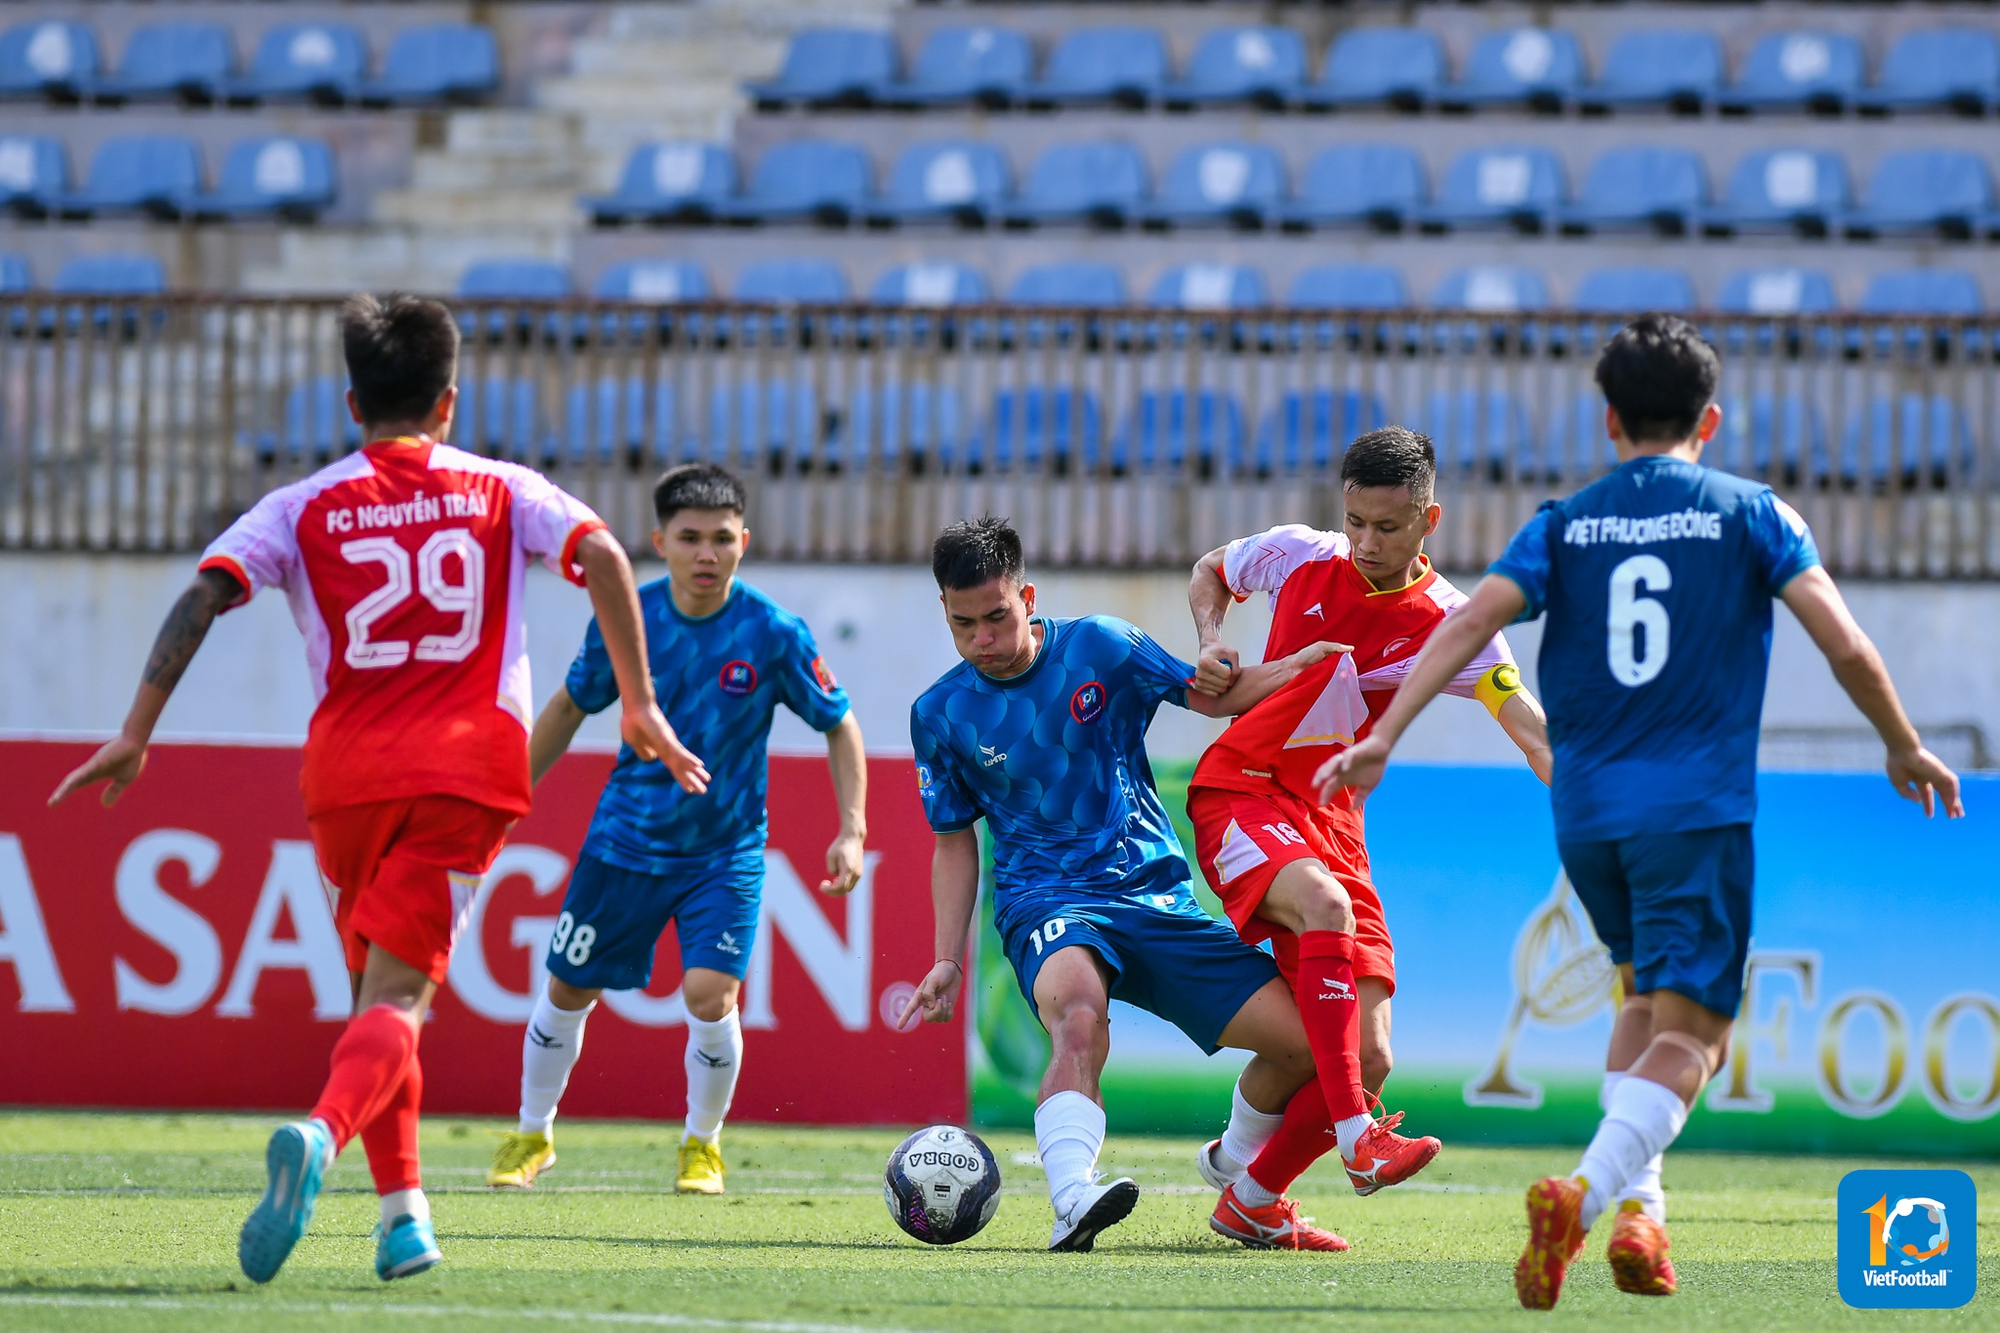 Việt Phương Đông (áo xanh) đang có màn trình diễn thiếu sức sống nhất so với chính họ kể từ khi góp mặt tại sân chơi HPL.